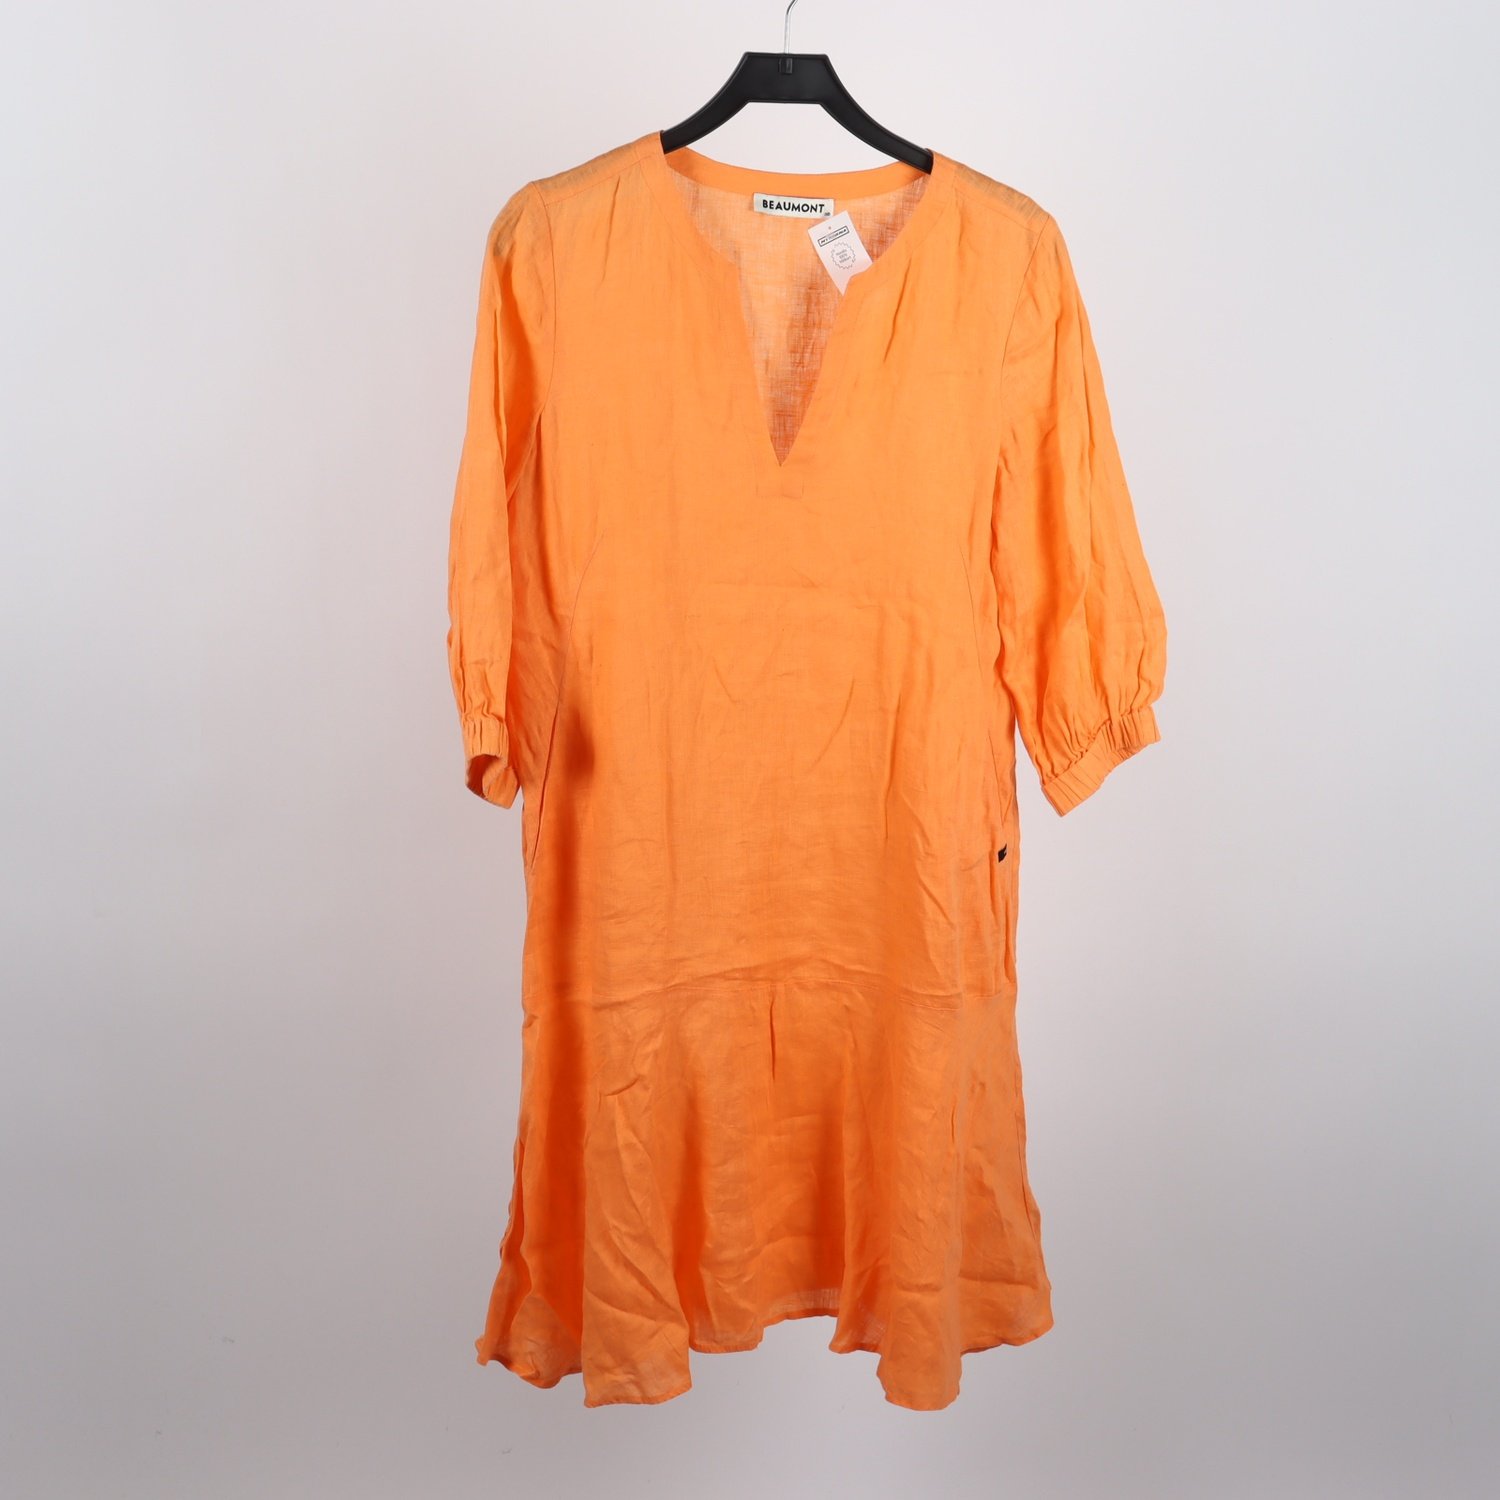 Klänning, Beaumont, orange, 100 % linne, stl. 36